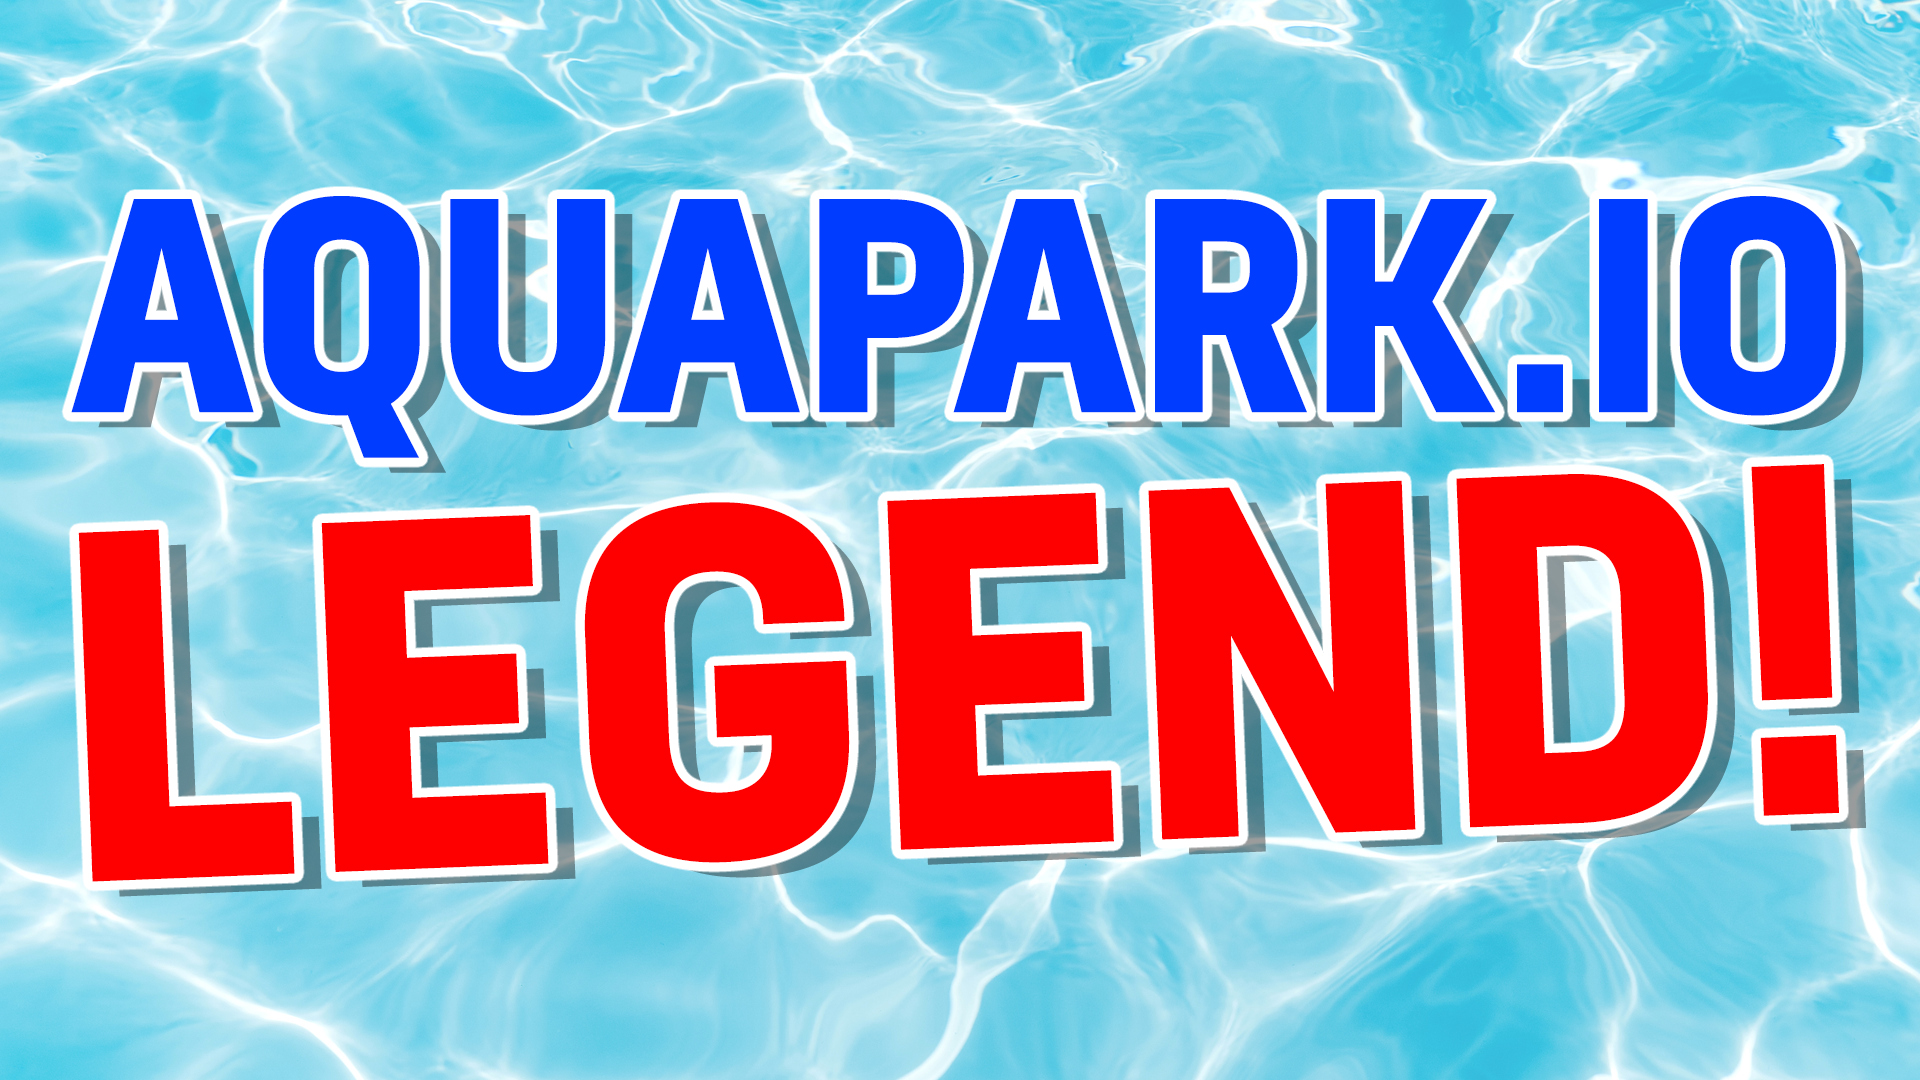 Aquapark legend